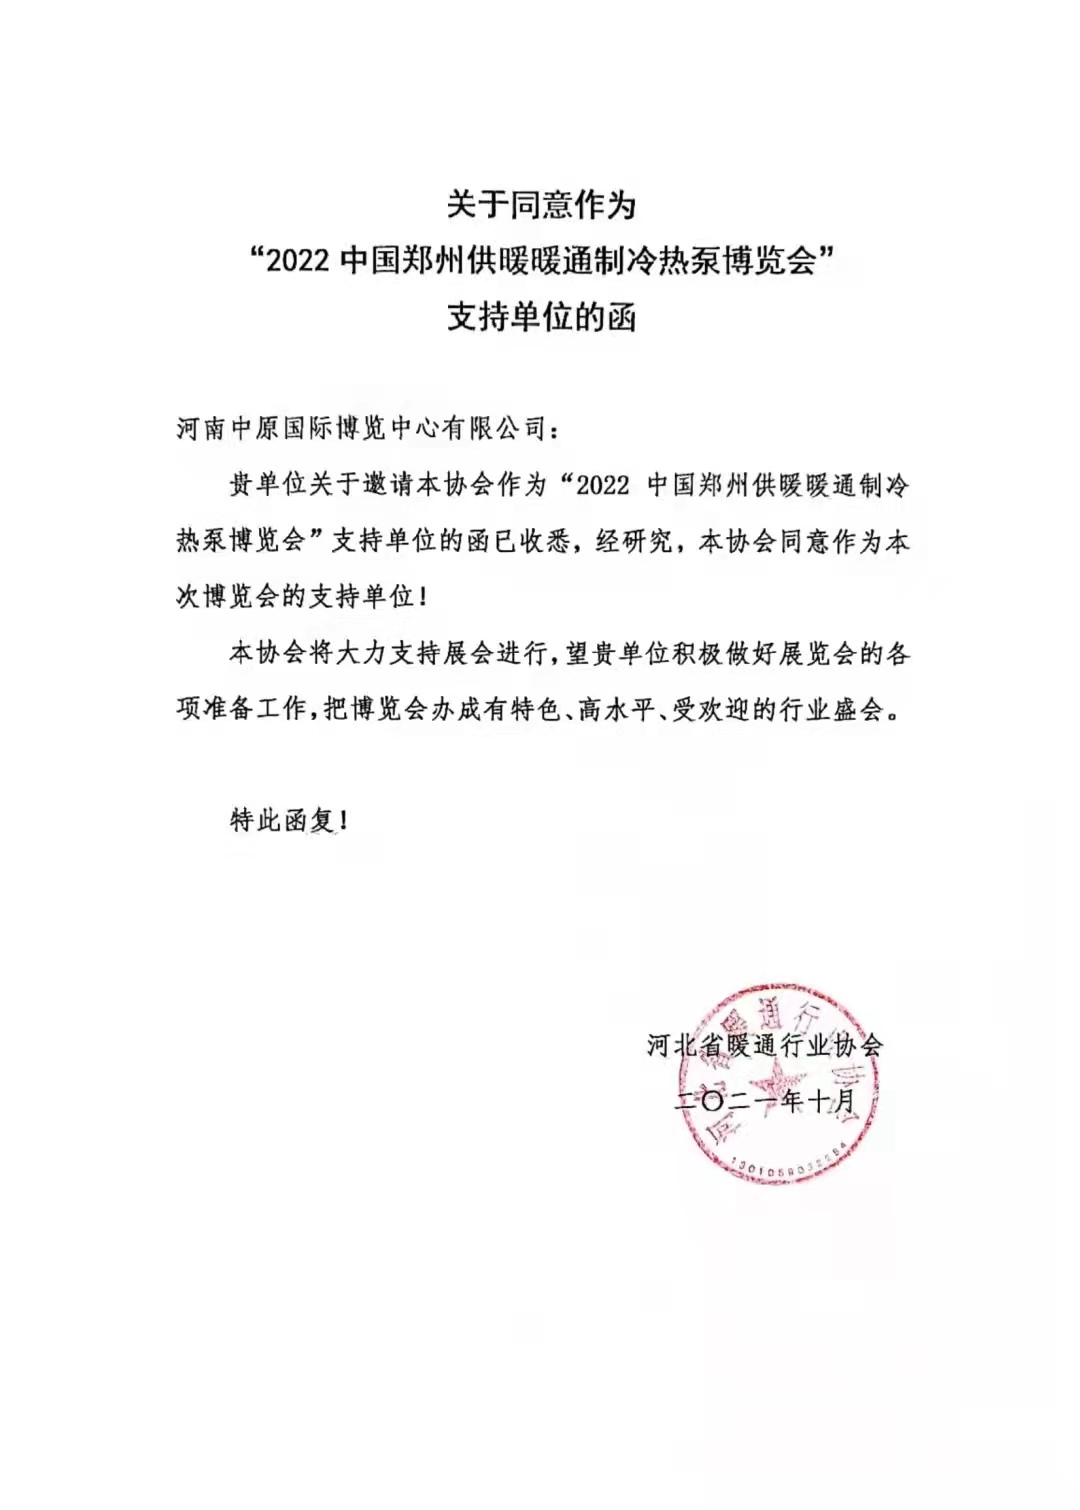 感谢河北省暖通行业协会对2022郑州制冷展的大力支持